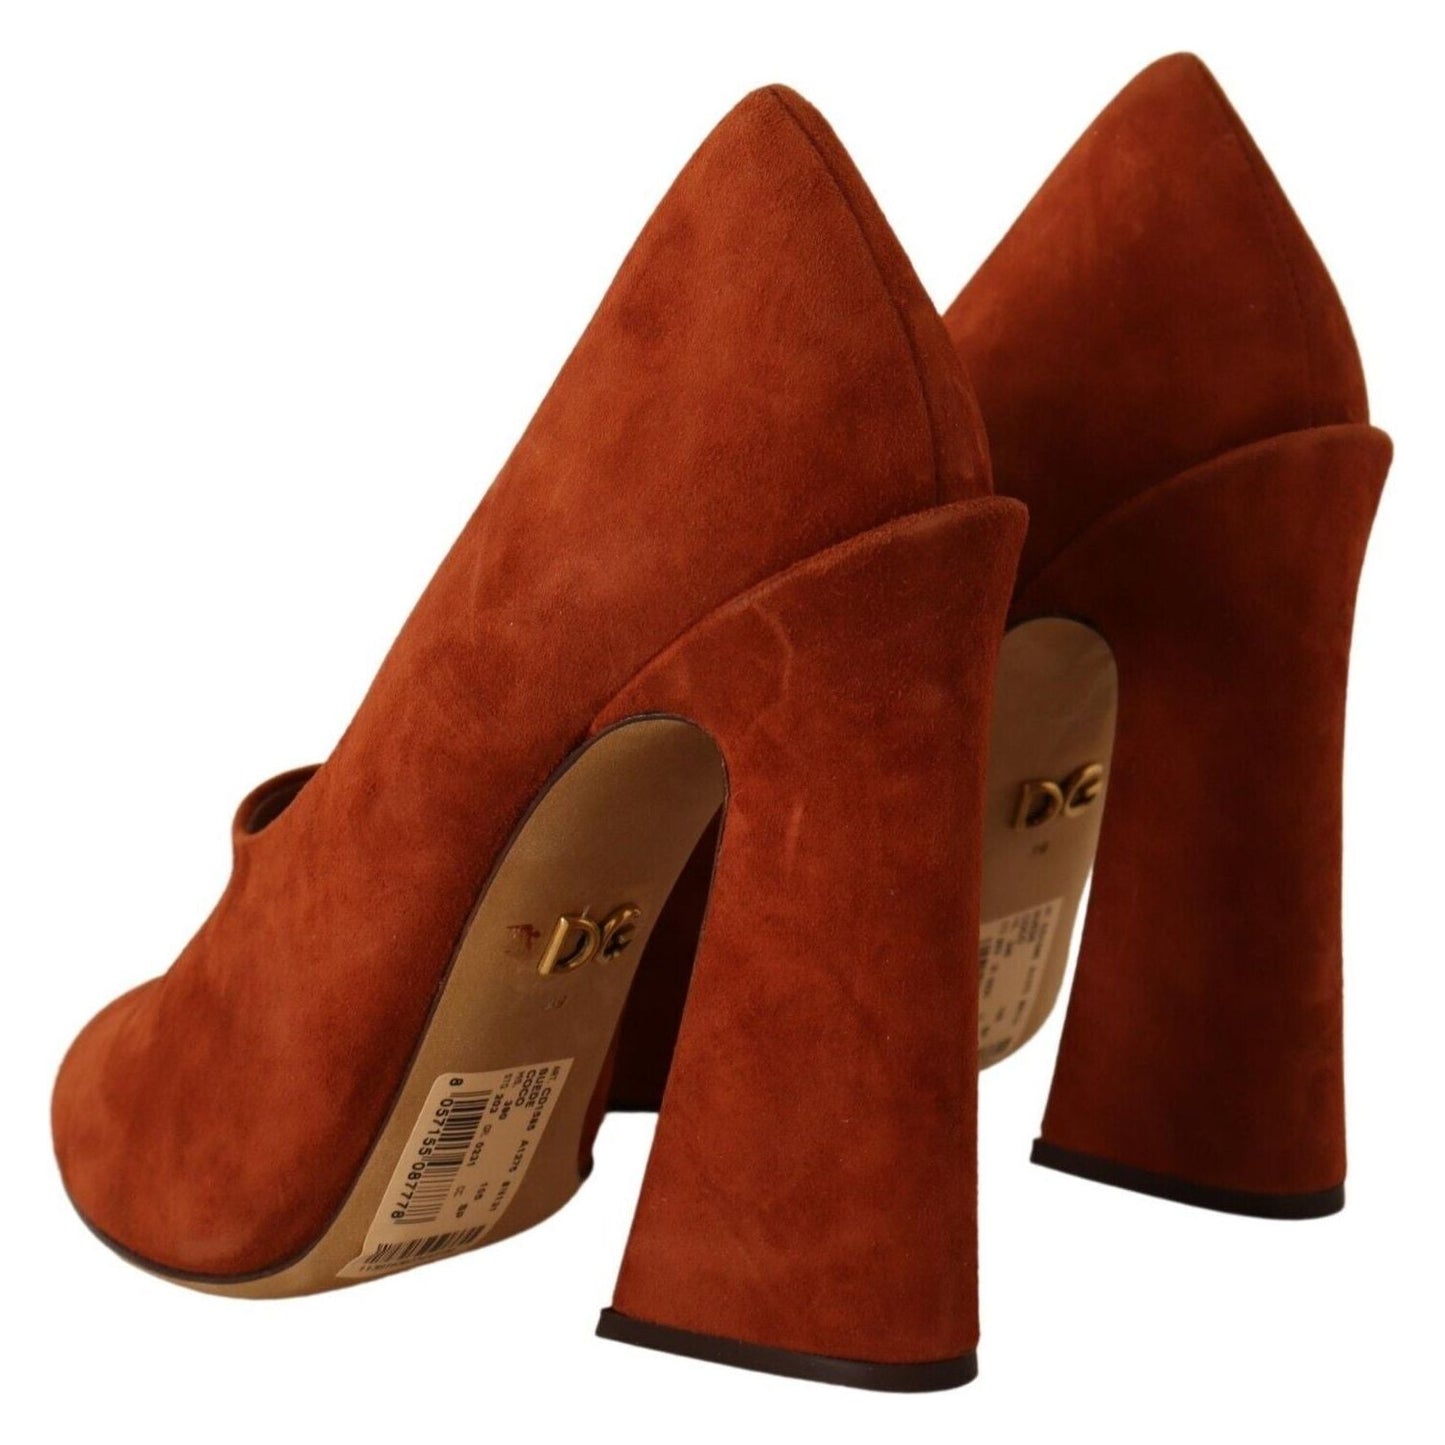 Dolce & Gabbana Elegant Cognac Suede Pumps brown-suede-leather-block-heels-pumps-shoes s-l1600-3-104-f04b0cb6-d7f.jpg